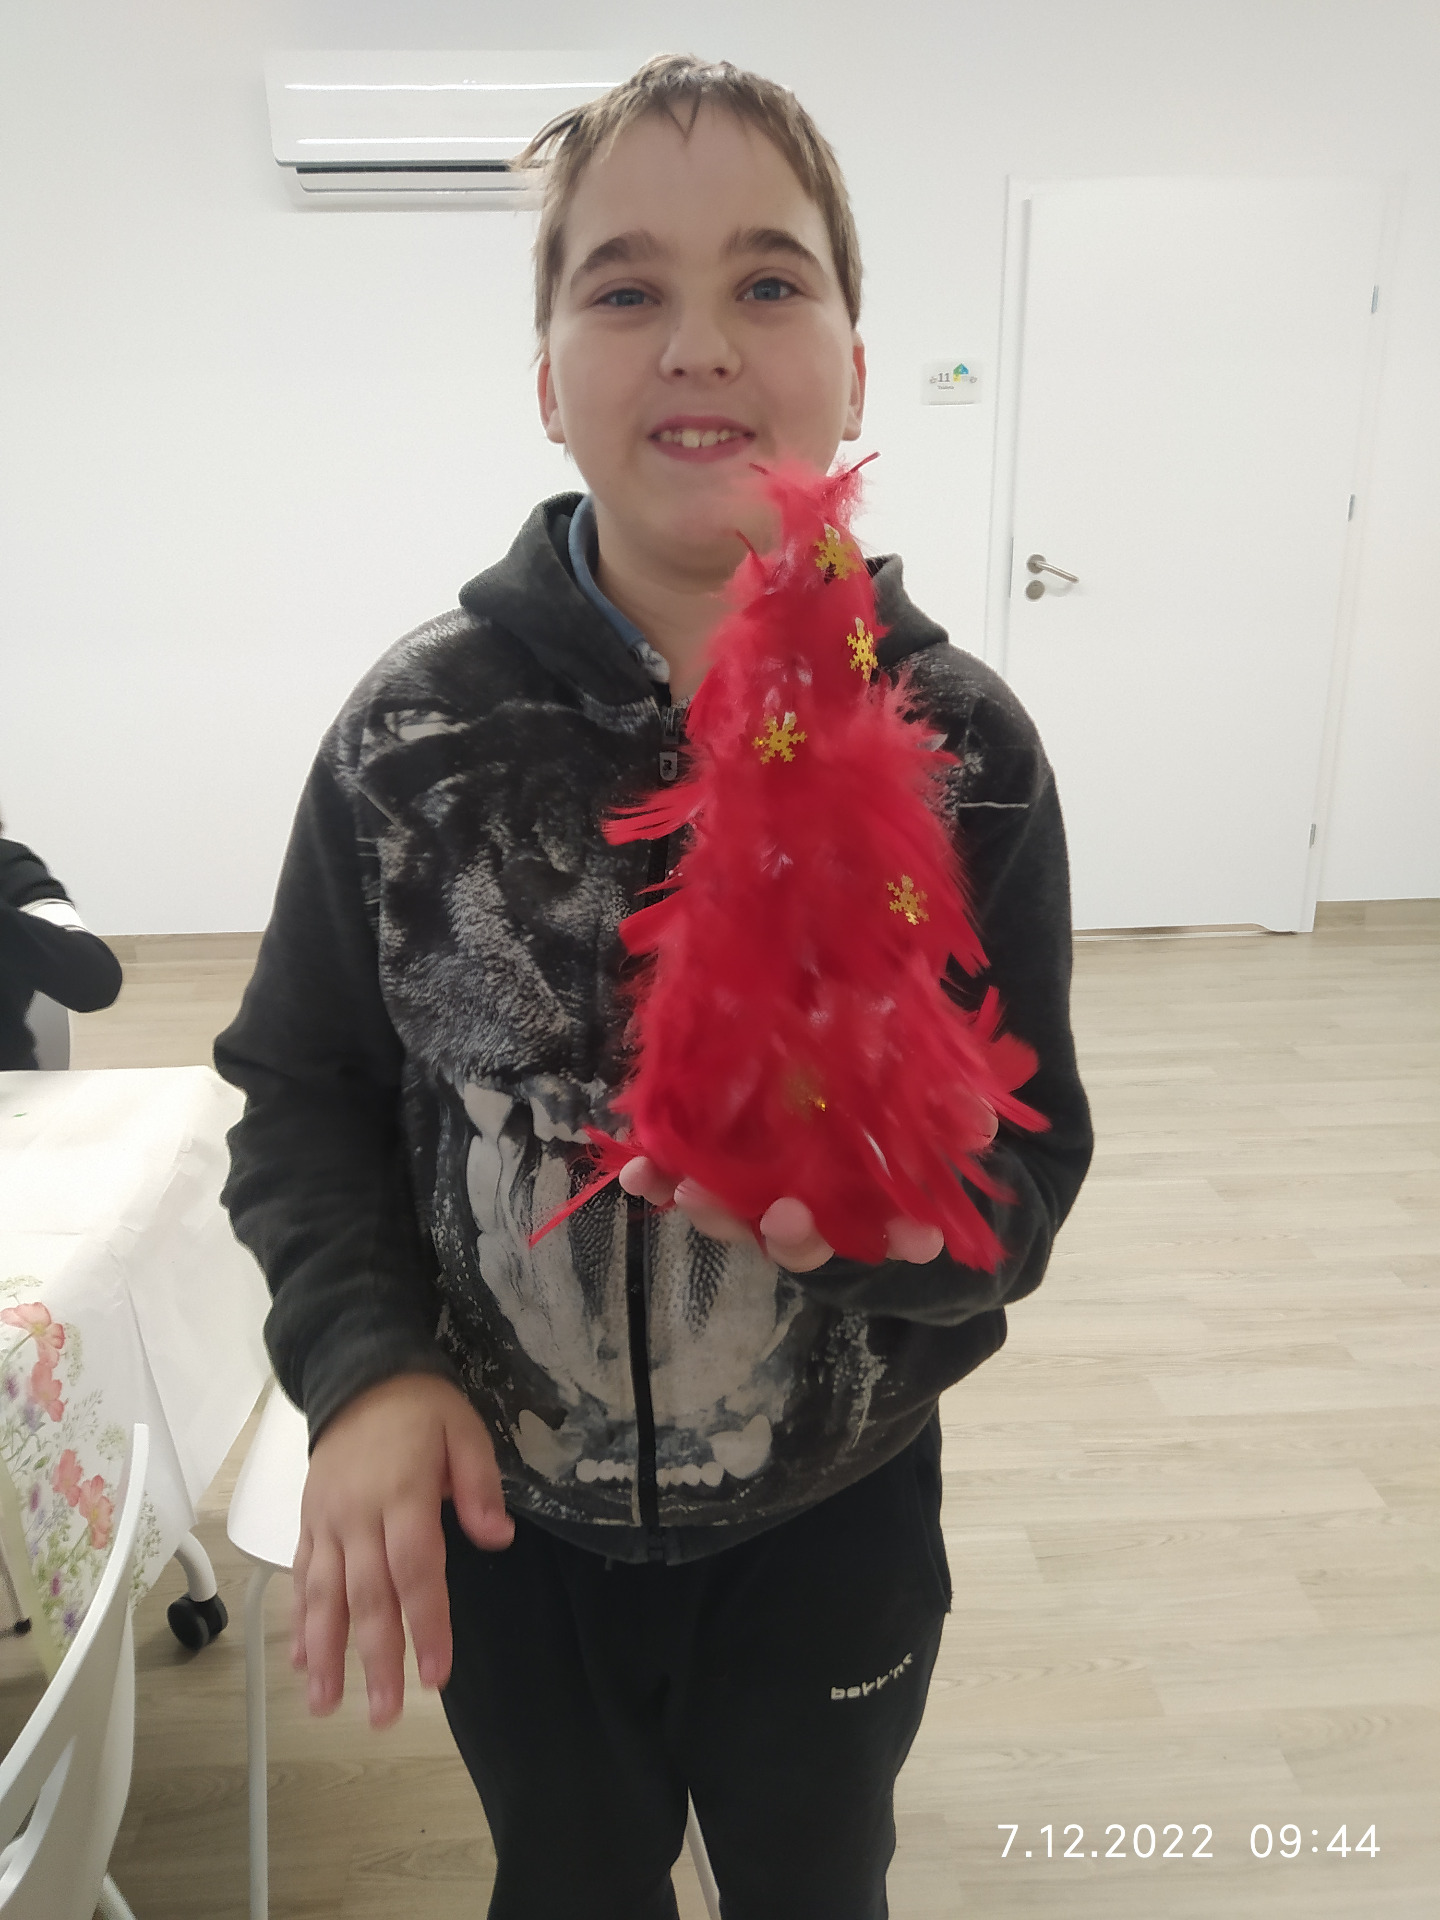 Chłopiec trzyma w rękach czerwoną choinkę z piórek